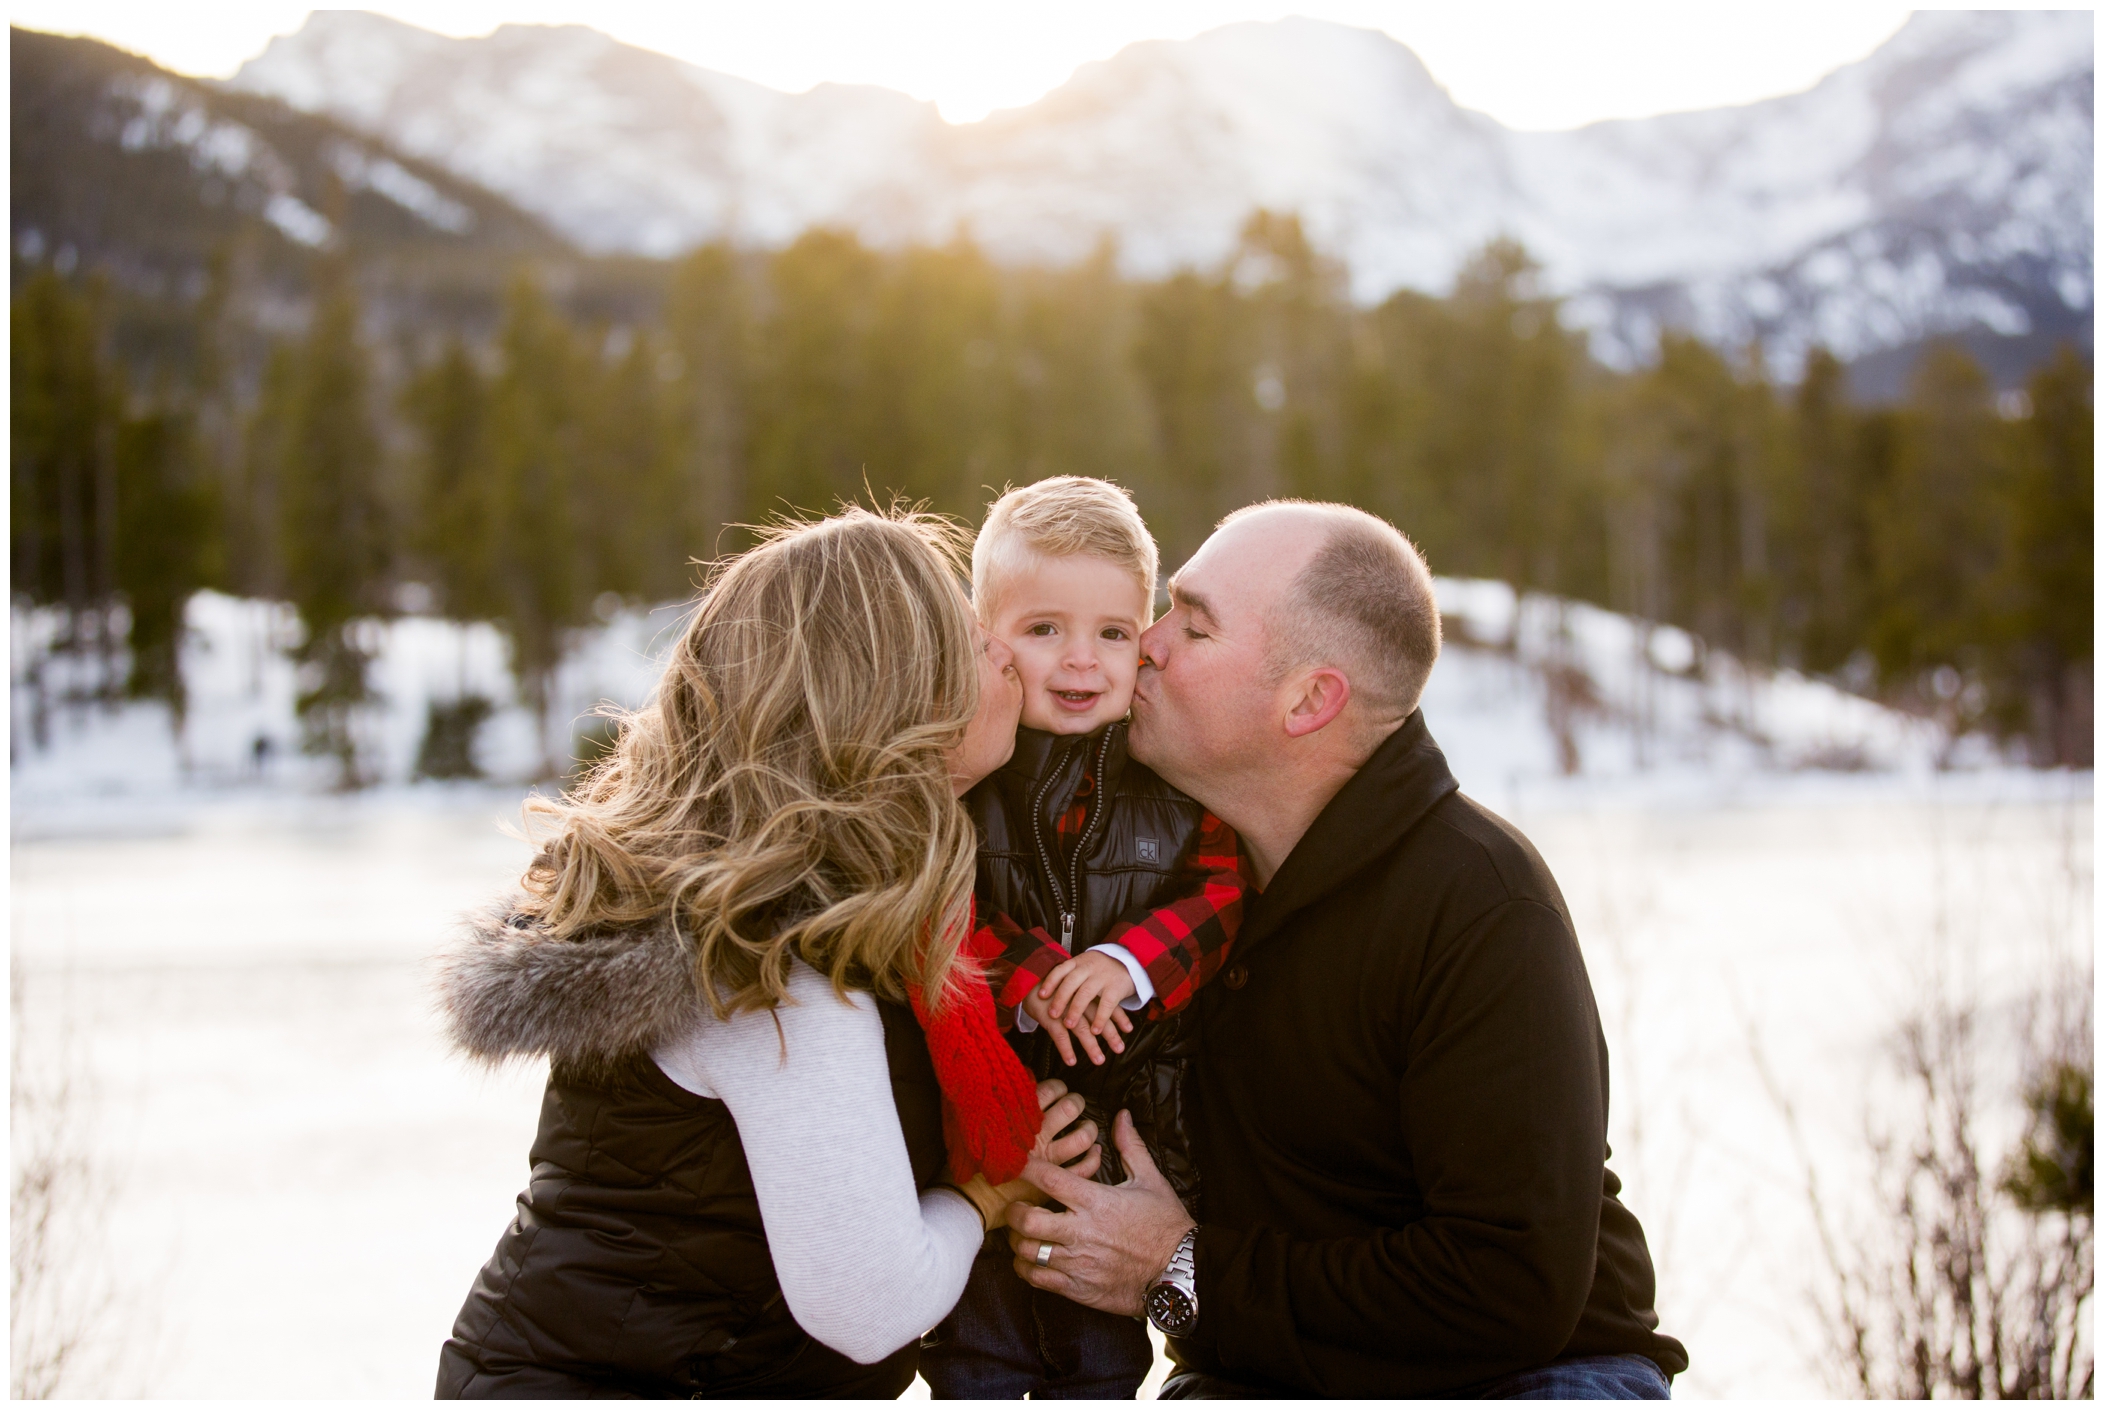 Estes Park Colorado family photographs during winter 